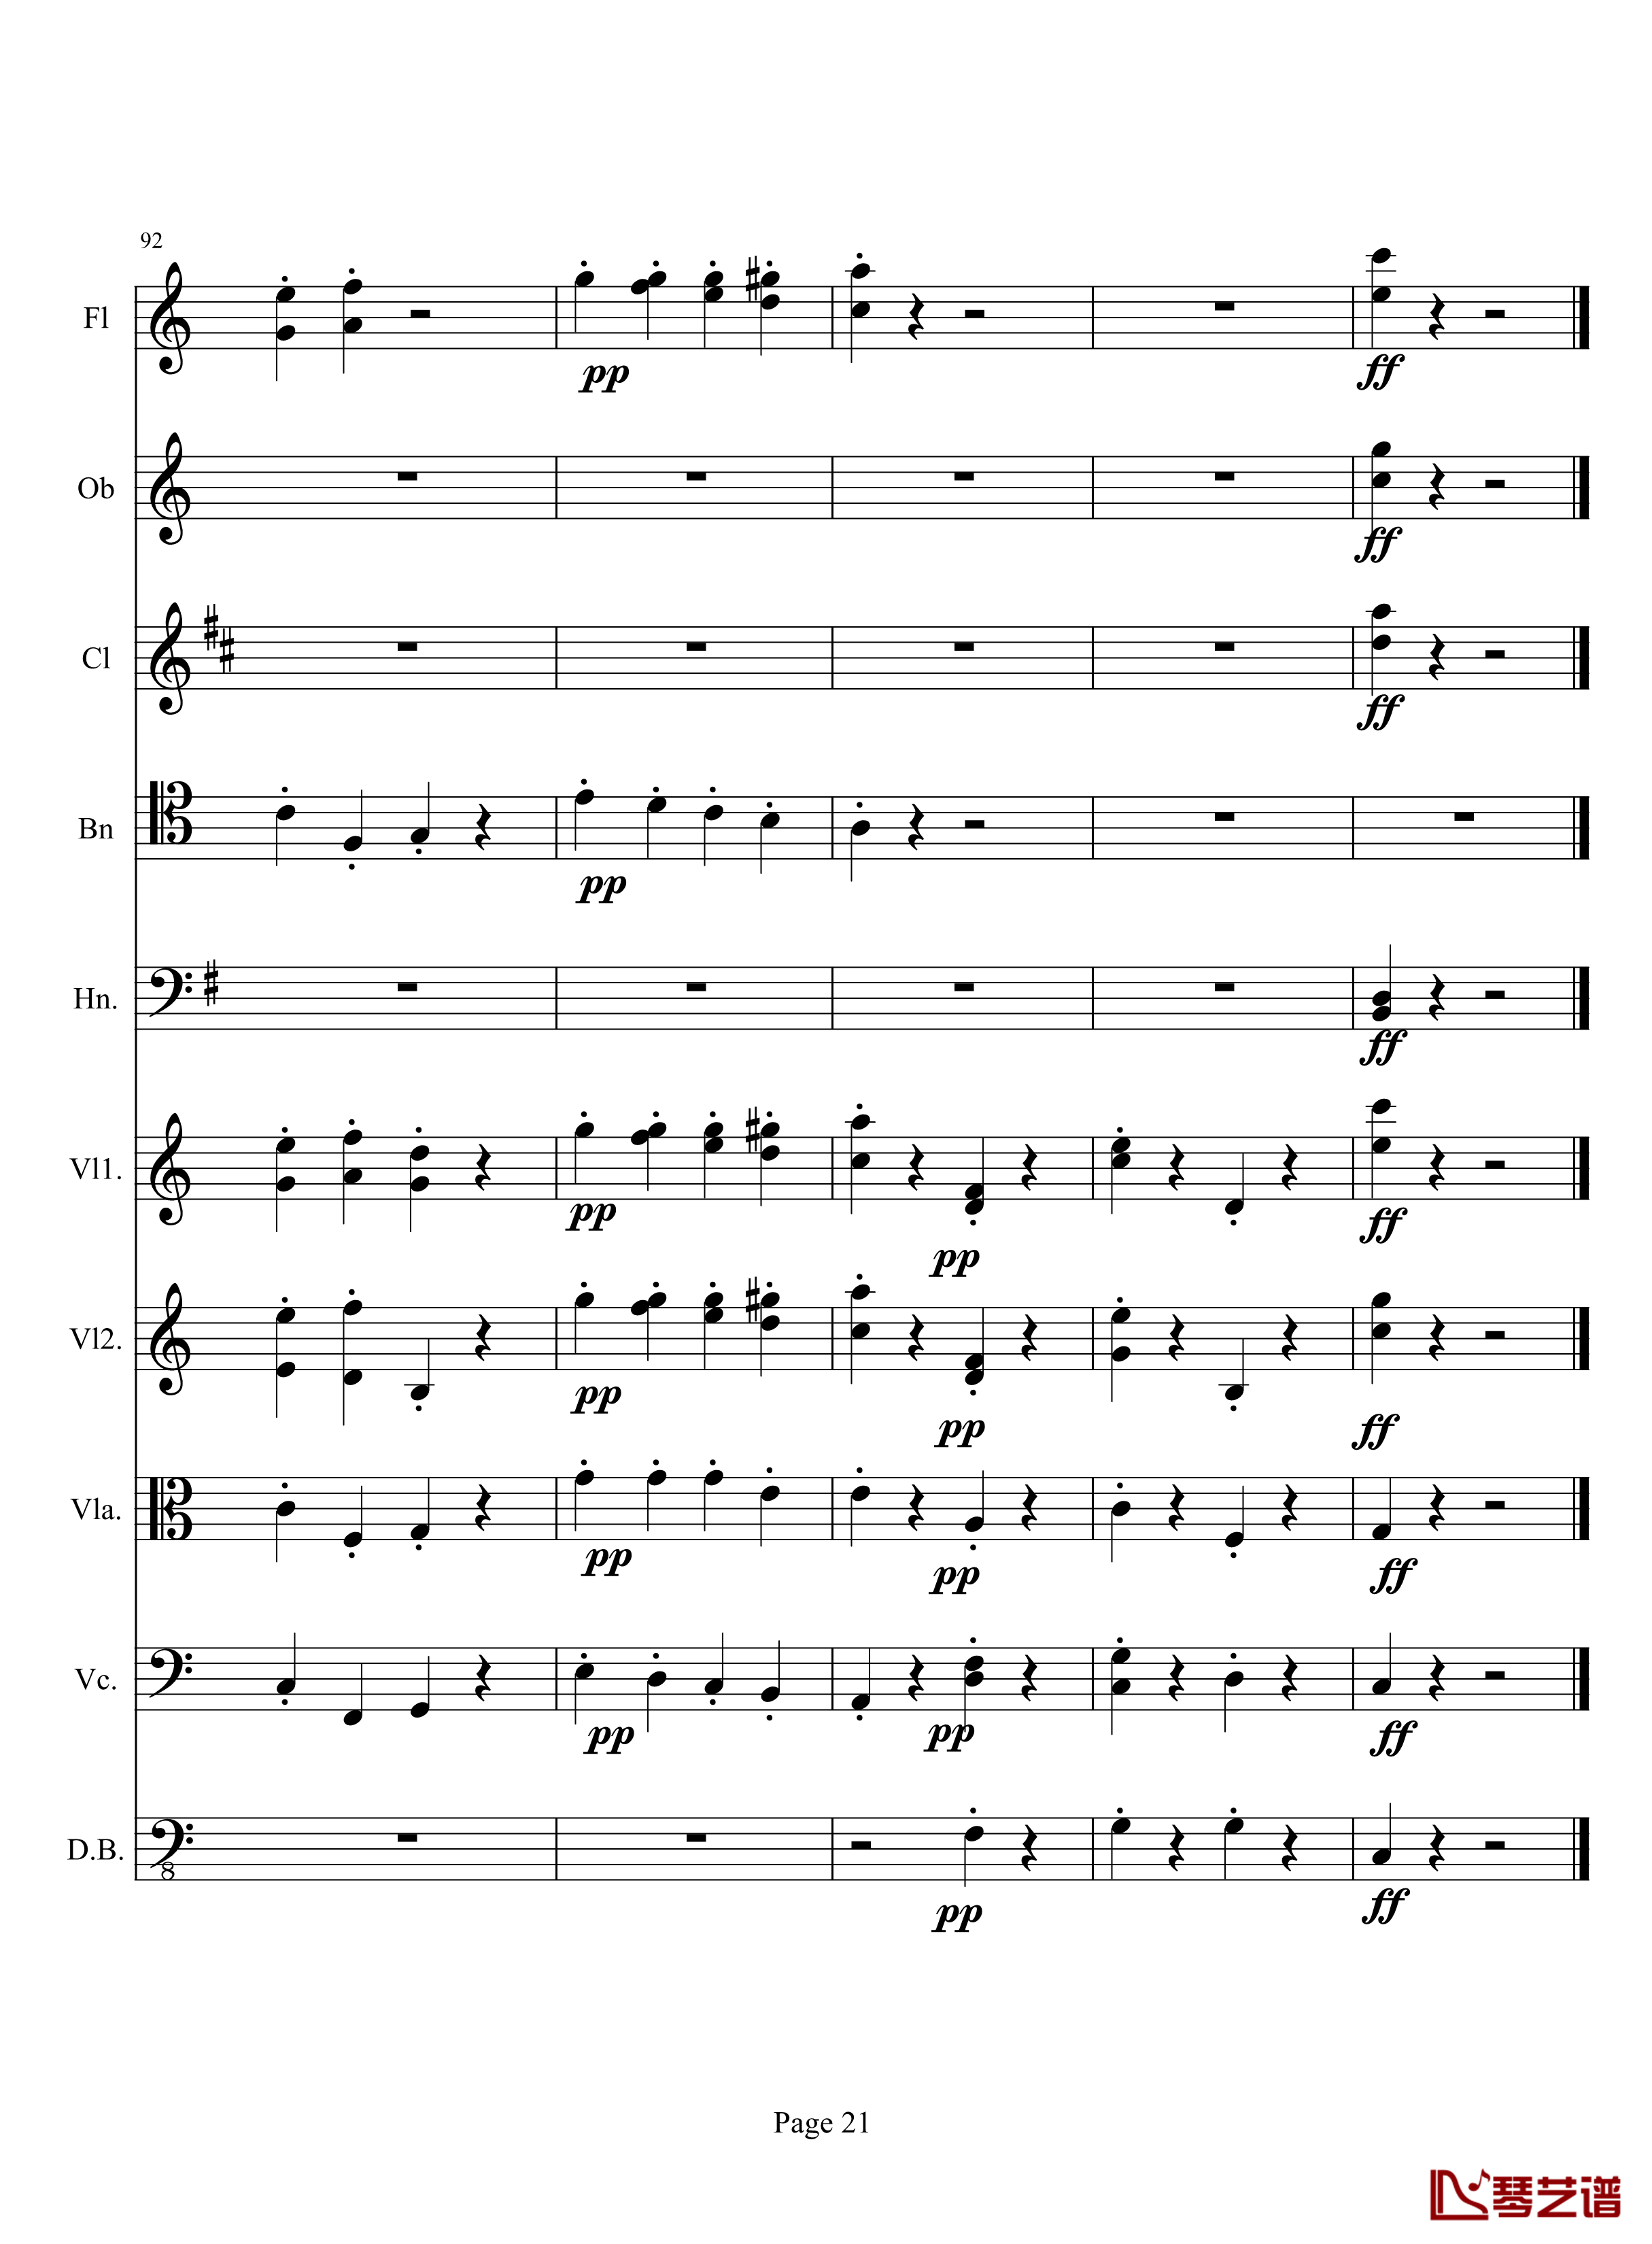 奏鸣曲之交响钢琴谱-第10首-2-贝多芬-beethoven21